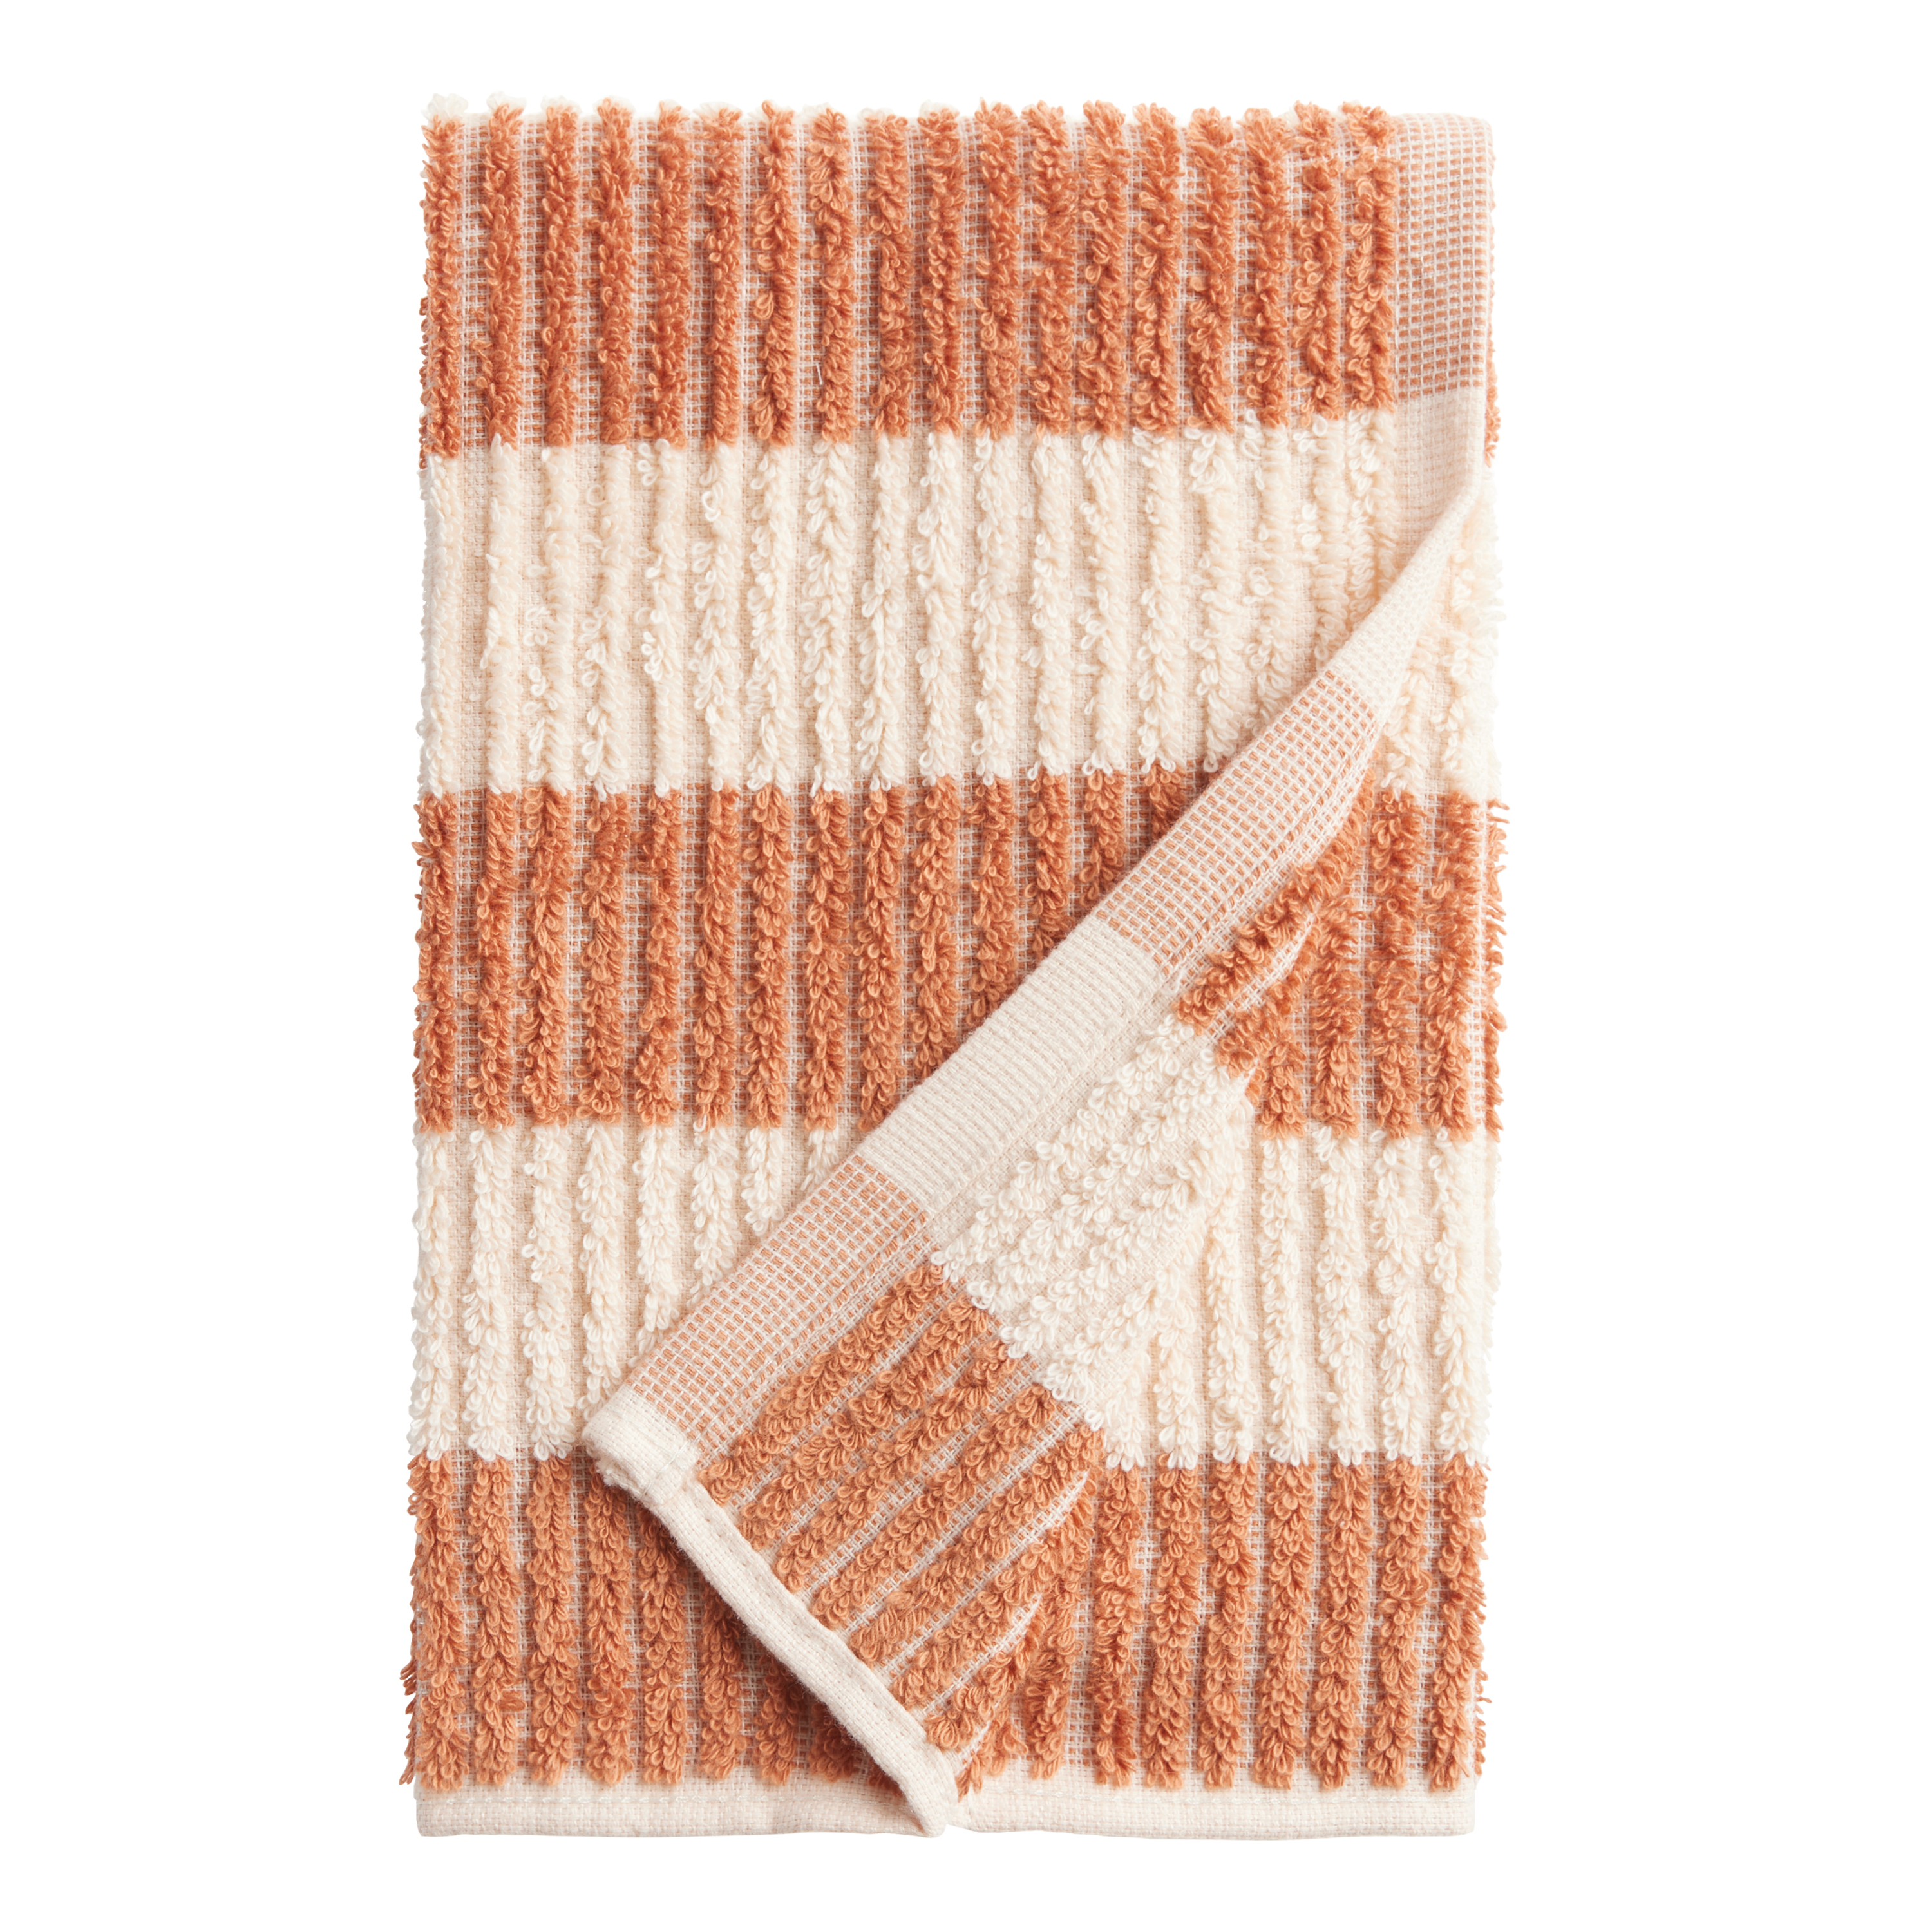 Wholesale Aglitter Stripe Peach Hotel Towels Manufacturers In USA,UK